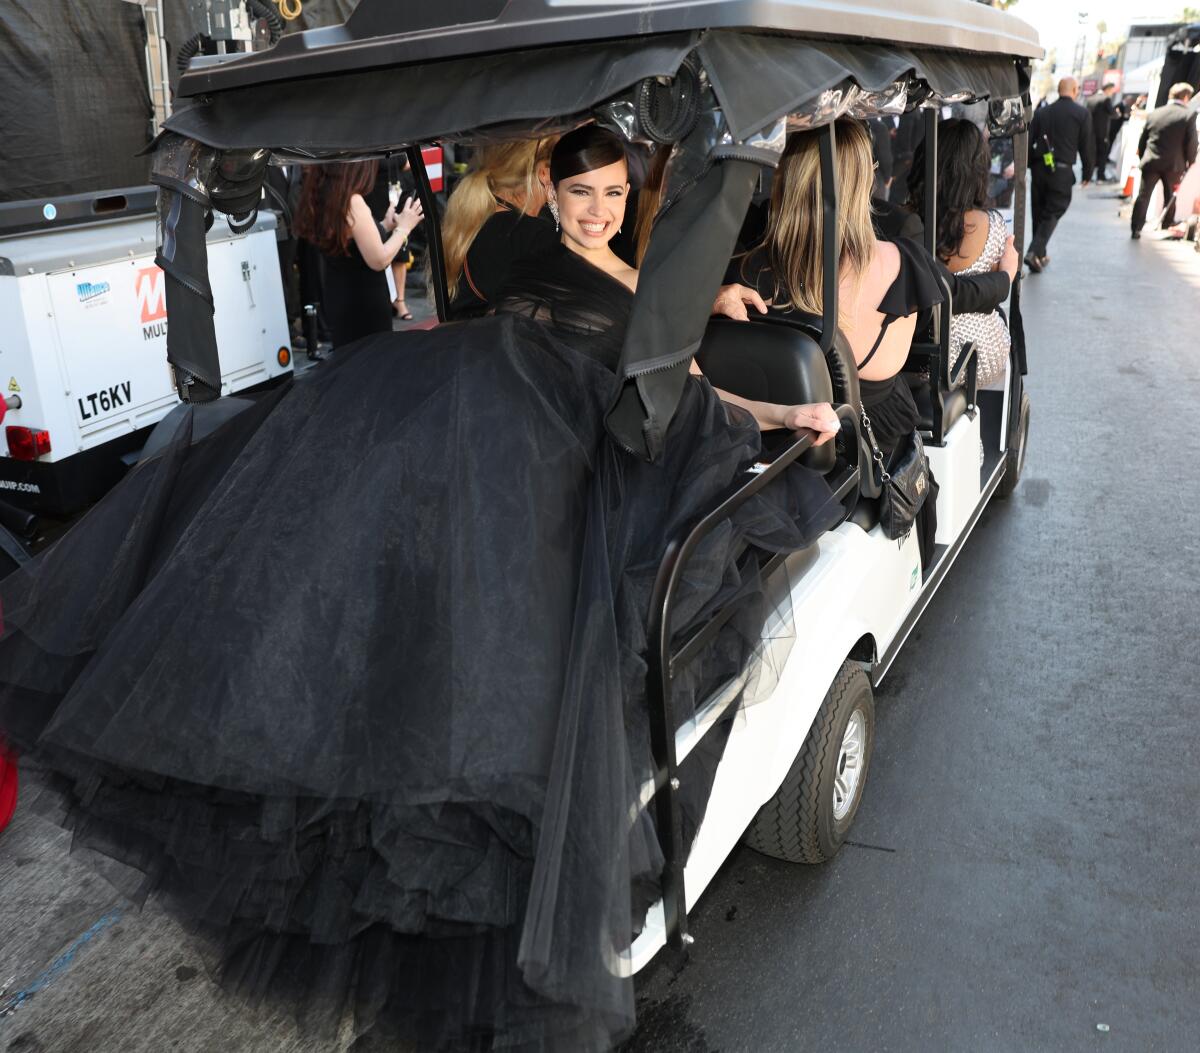 Sofia Carson arrives at the 94th Academy Awards.